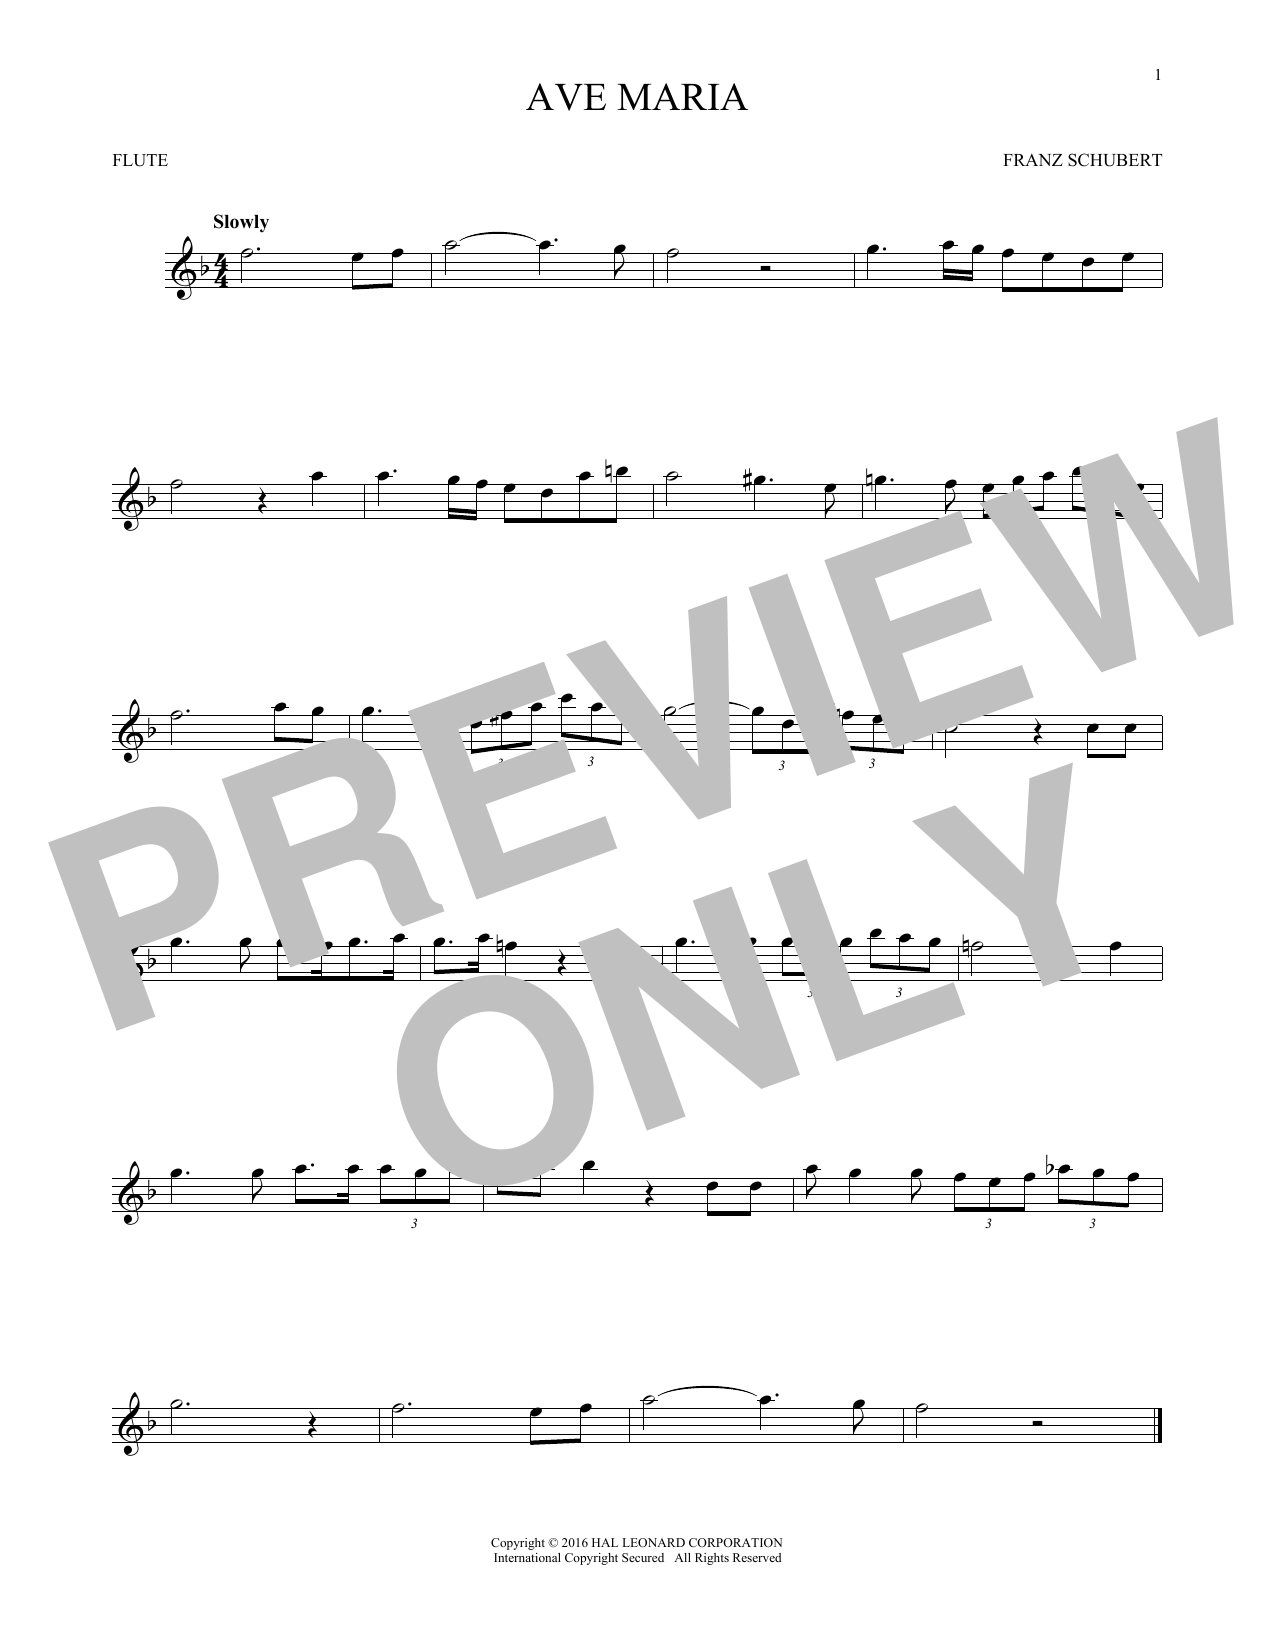 Ave Maria, Op. 52, No. 6 (Flute Solo) von Franz Schubert